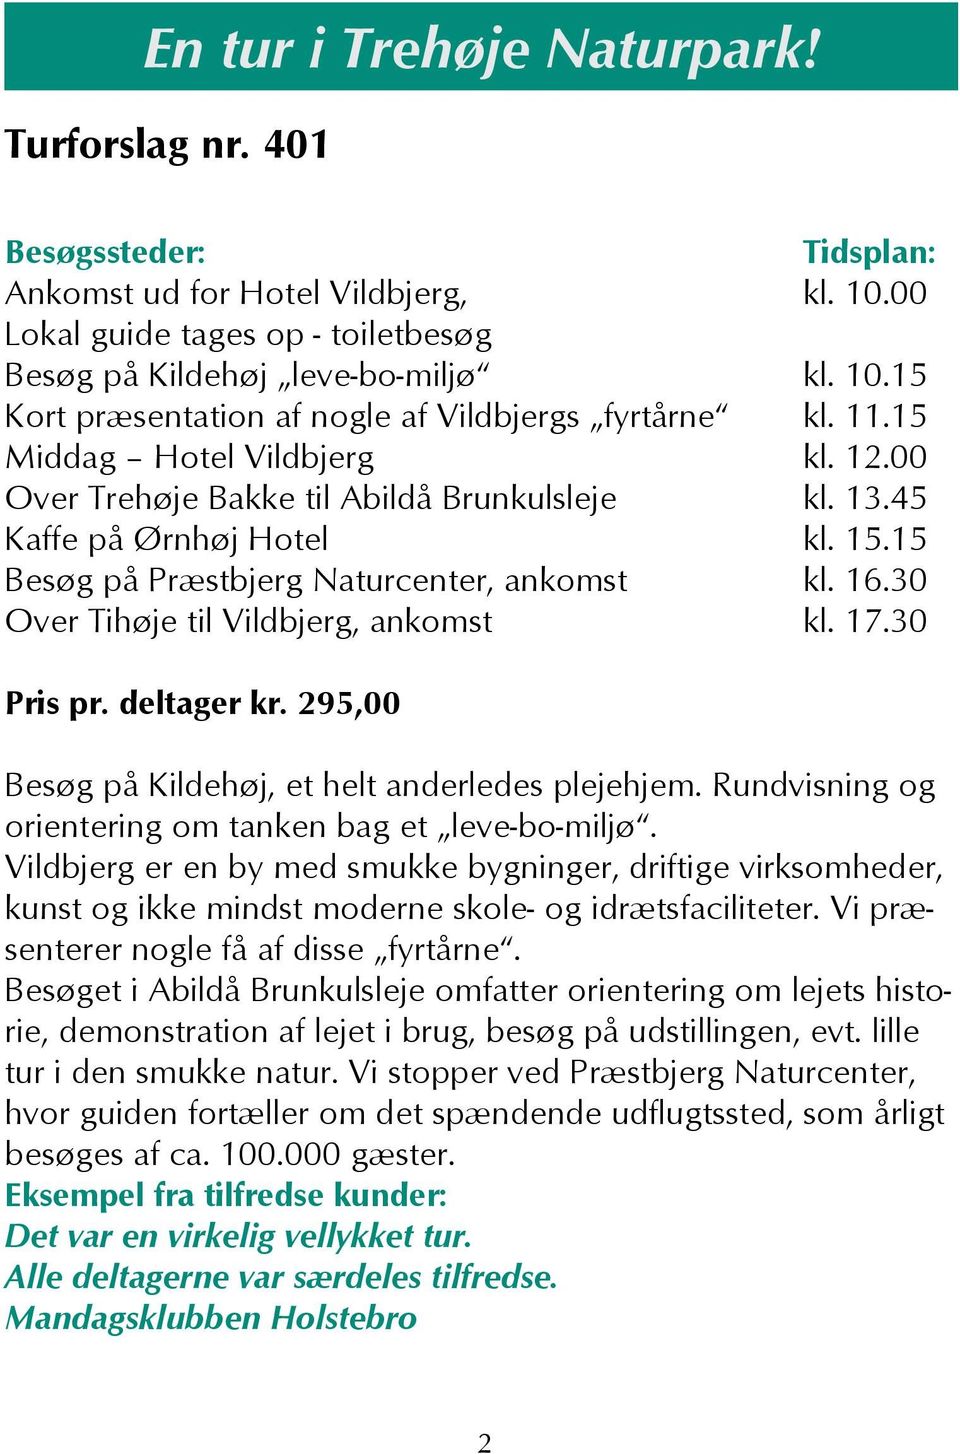 30 Over Tihøje til Vildbjerg, ankomst kl. 17.30 Pris pr. deltager kr. 295,00 Besøg på Kildehøj, et helt anderledes plejehjem. Rundvisning og orientering om tanken bag et leve-bo-miljø.